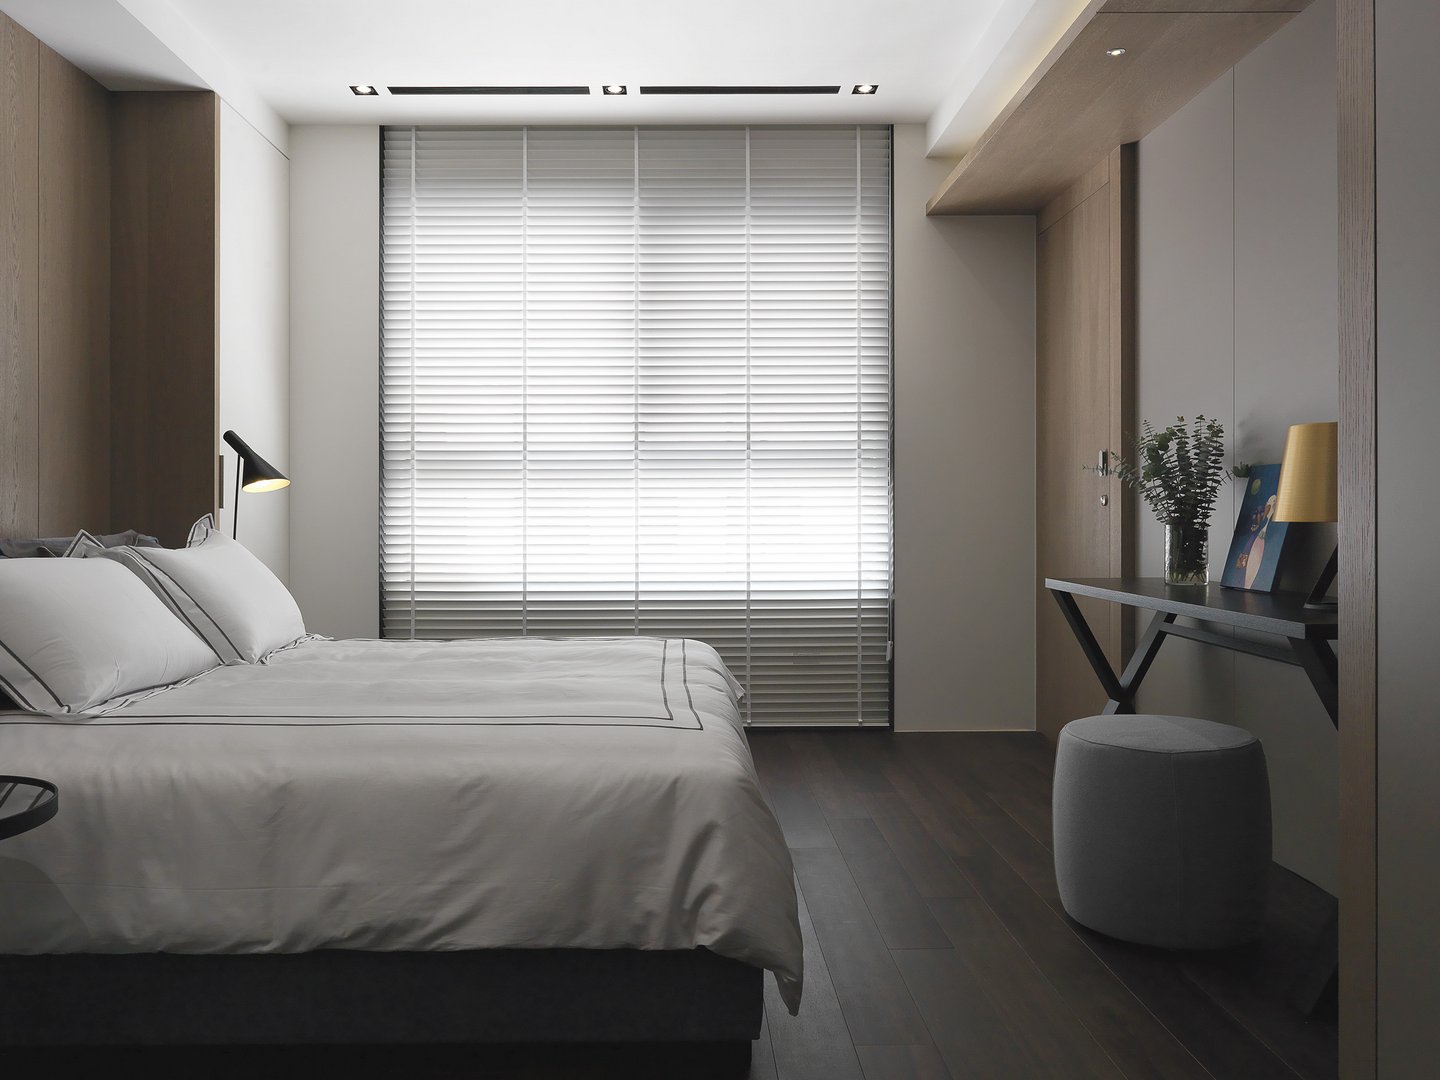 侧卧无吊顶设计，白色空间中使用了木质元素勾勒，营造出宽敞平静的既视感。